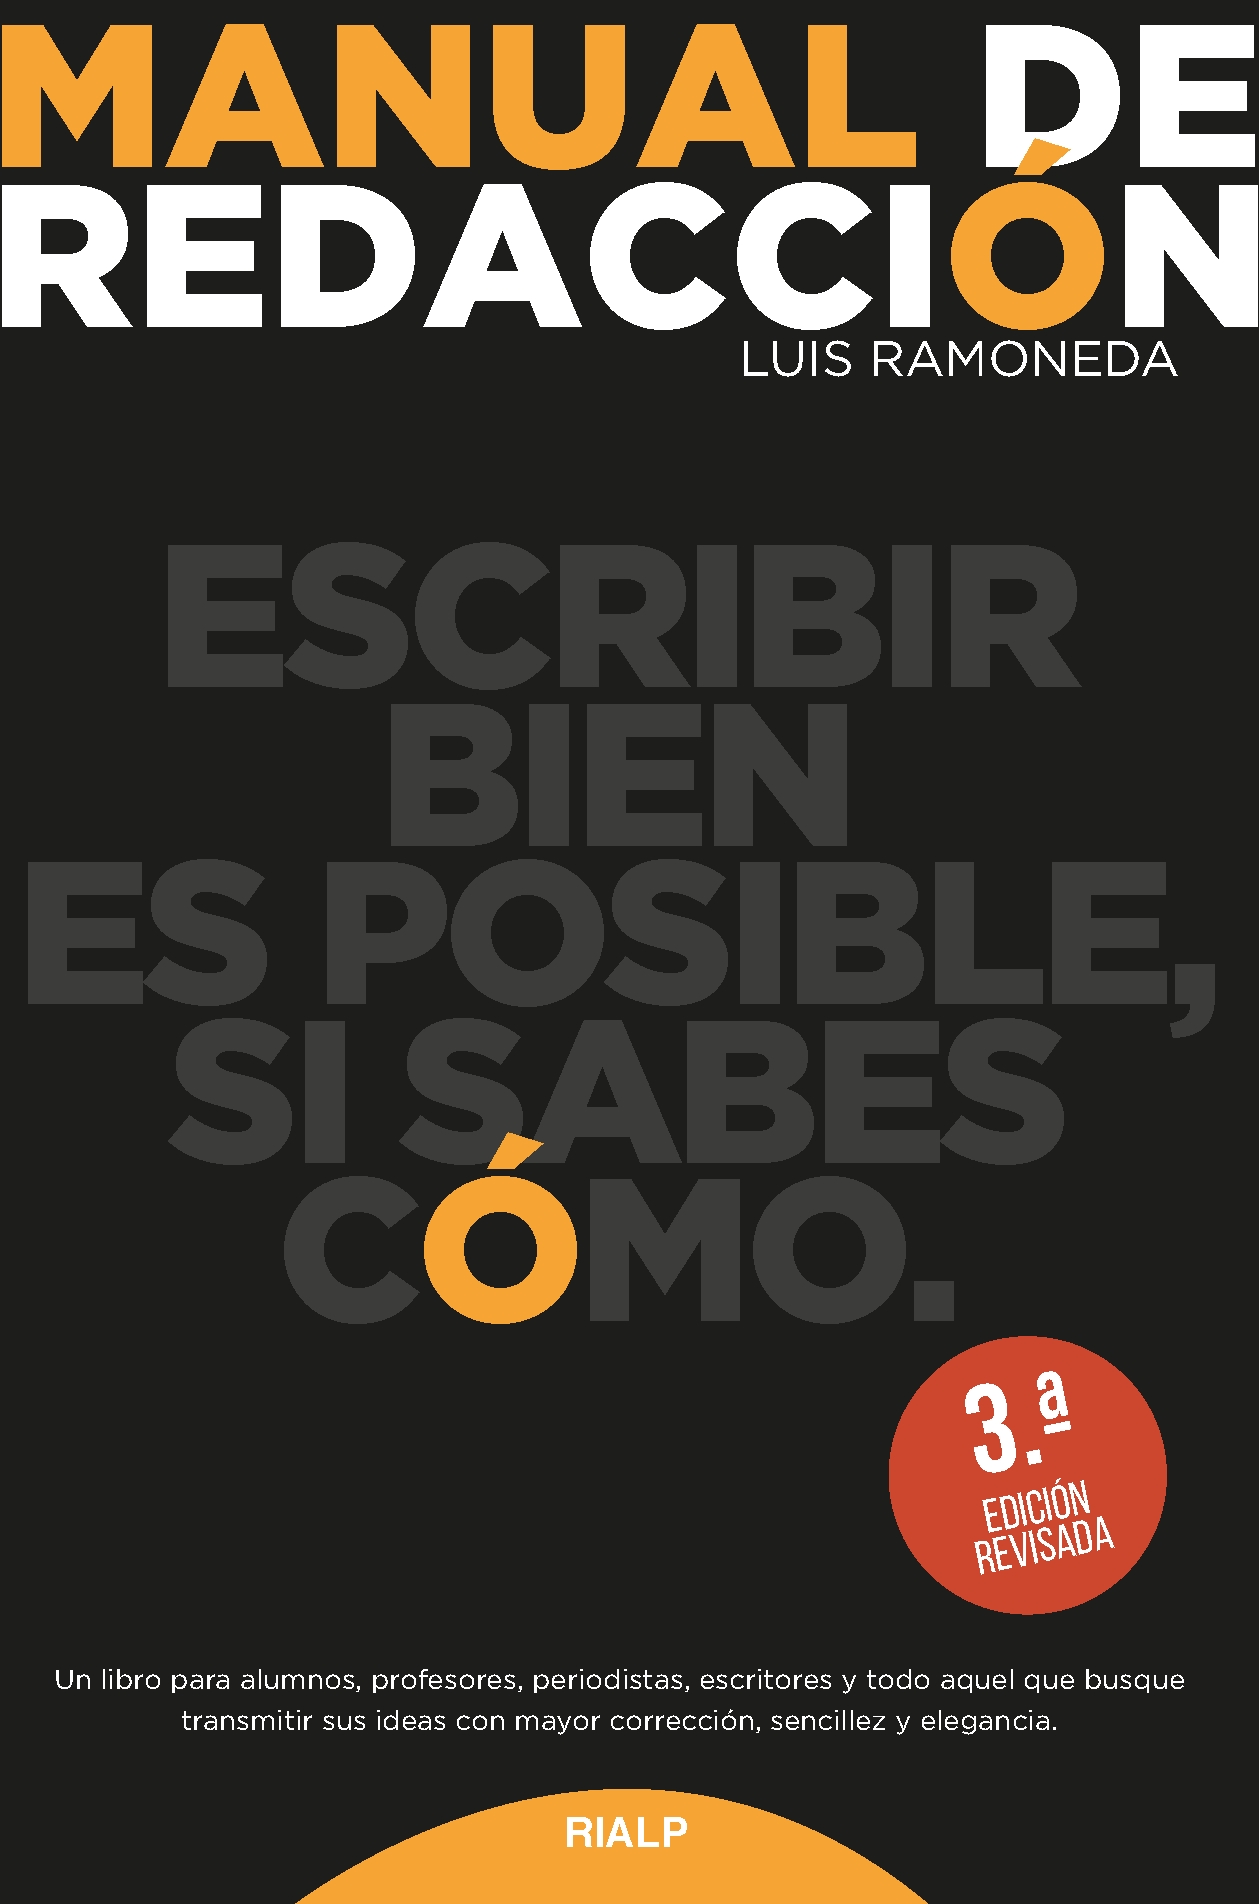 Manual de Redacción by Macaria España - Issuu